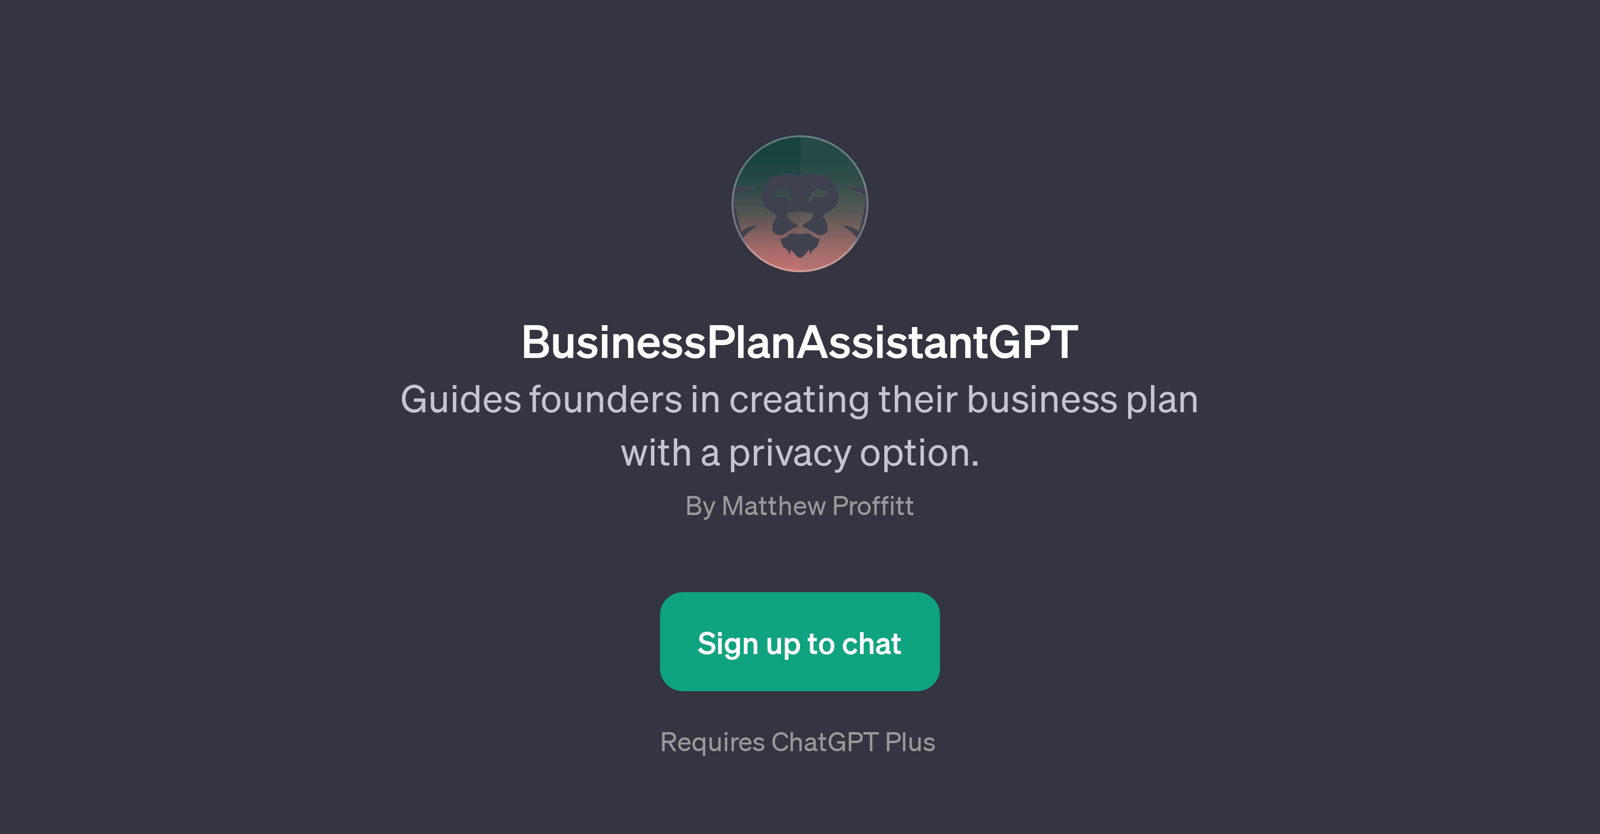 BusinessPlanAssistantGPT website